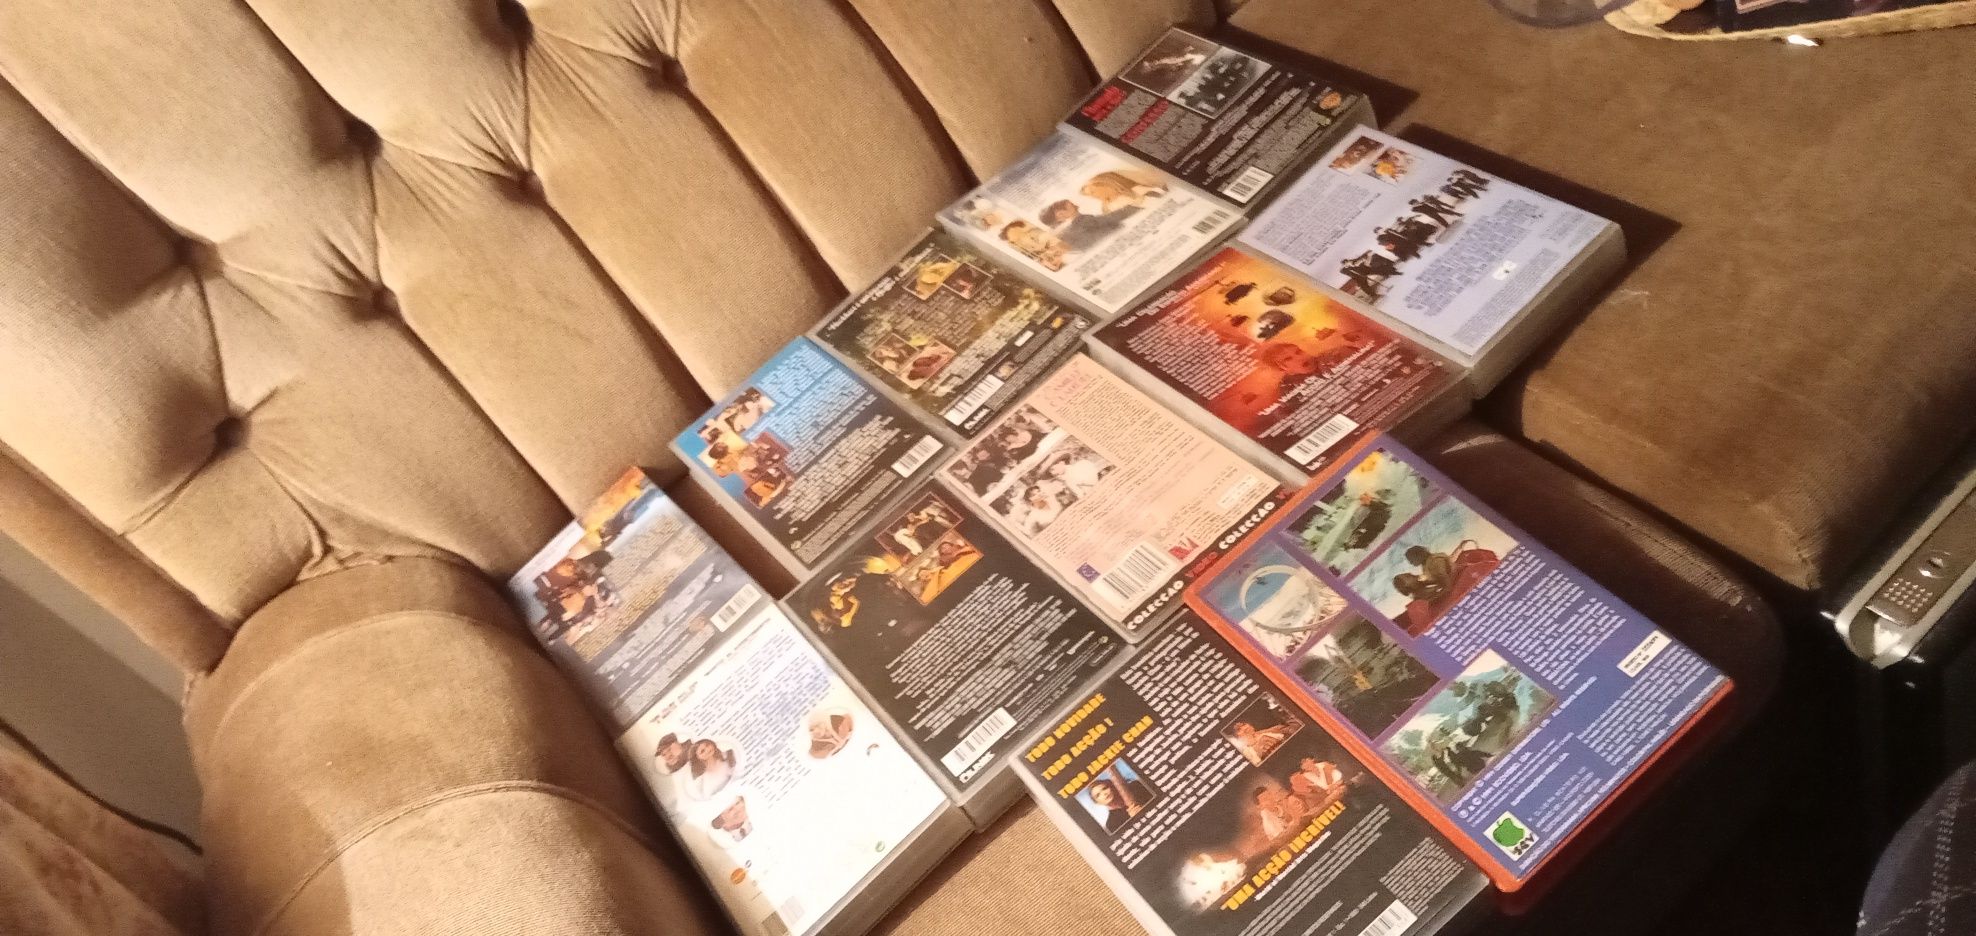 Filmes de qualidade DVDs alguns fechados-Cassetes VHS Filmes desde 1E.